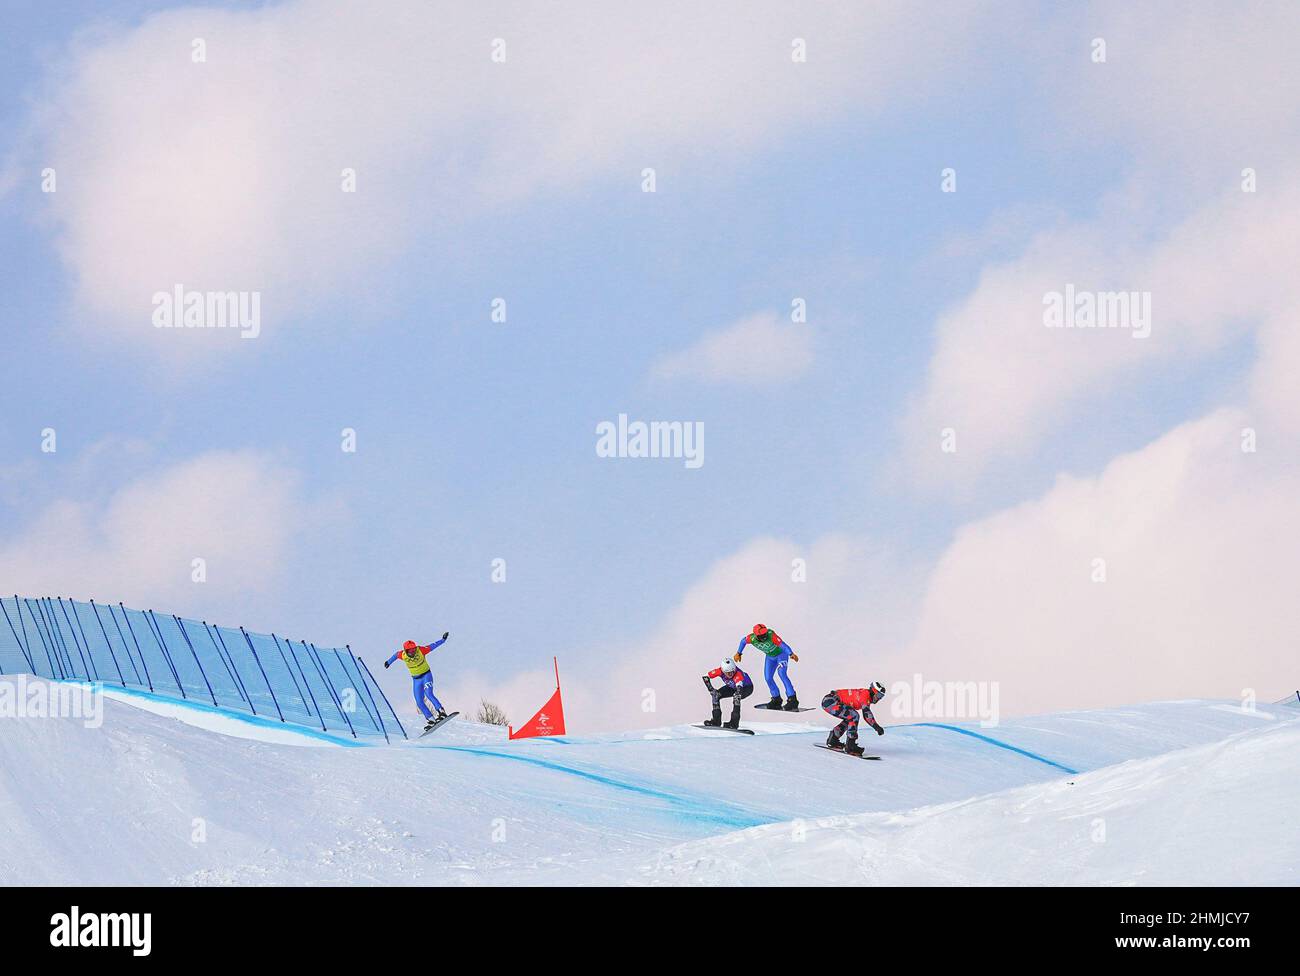 Zhangjiakou, Chinas Provinz Hebei. 10th. Februar 2022. Die Athleten treten während des Halbfinales des Snowboardkreuzes für Männer im Genting Snow Park in Zhangjiakou, nordchinesische Provinz Hebei, am 10. Februar 2022 an. Quelle: Xu Chang/Xinhua/Alamy Live News Stockfoto